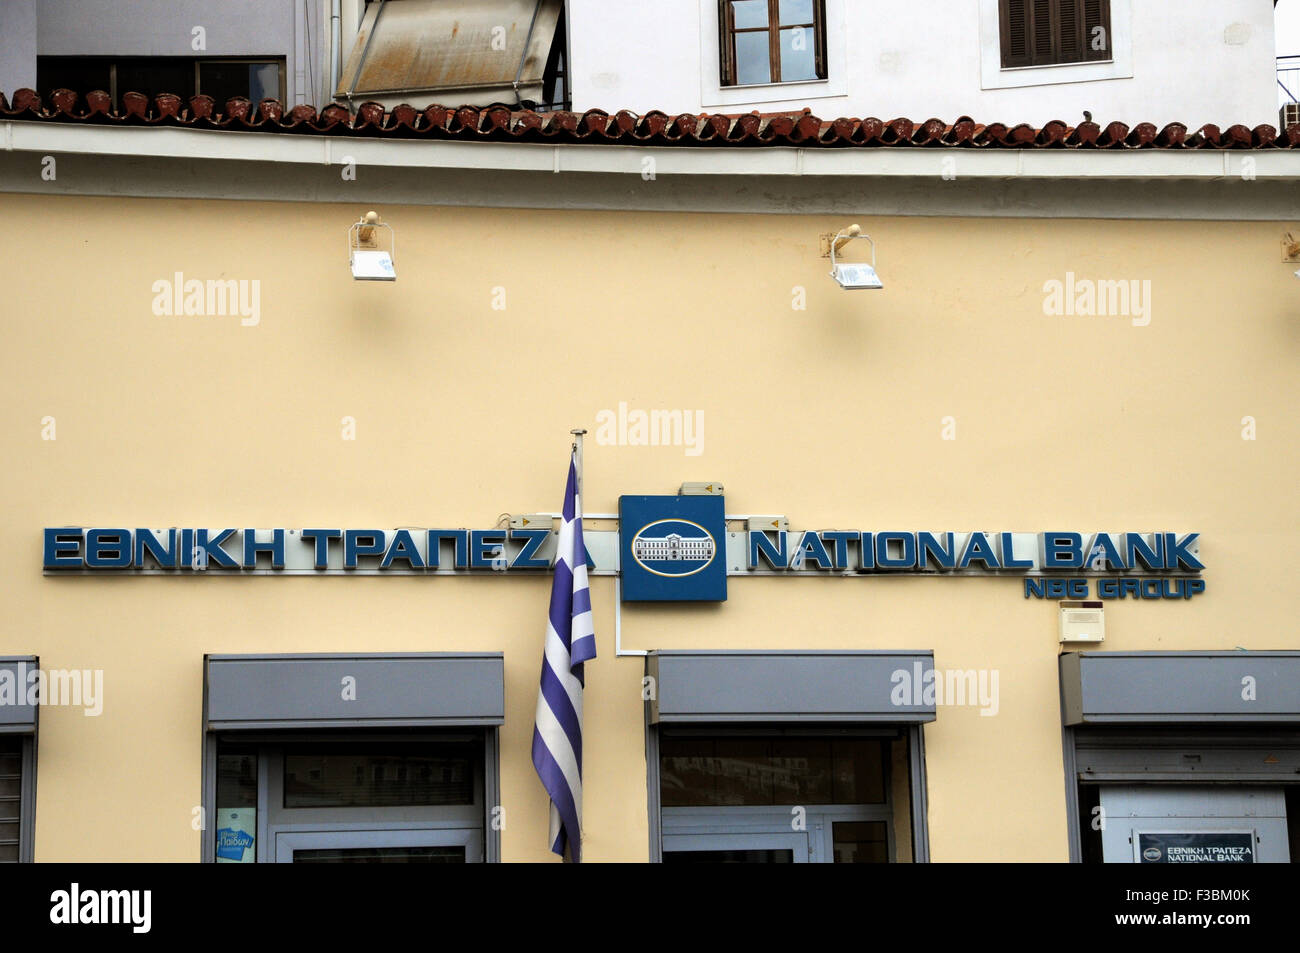 La Banca nazionale della Grecia. Qui viene mostrato il suo ramo nella piccola cittadina di Pilos (Pilos) nel Peloponneso. Foto Stock